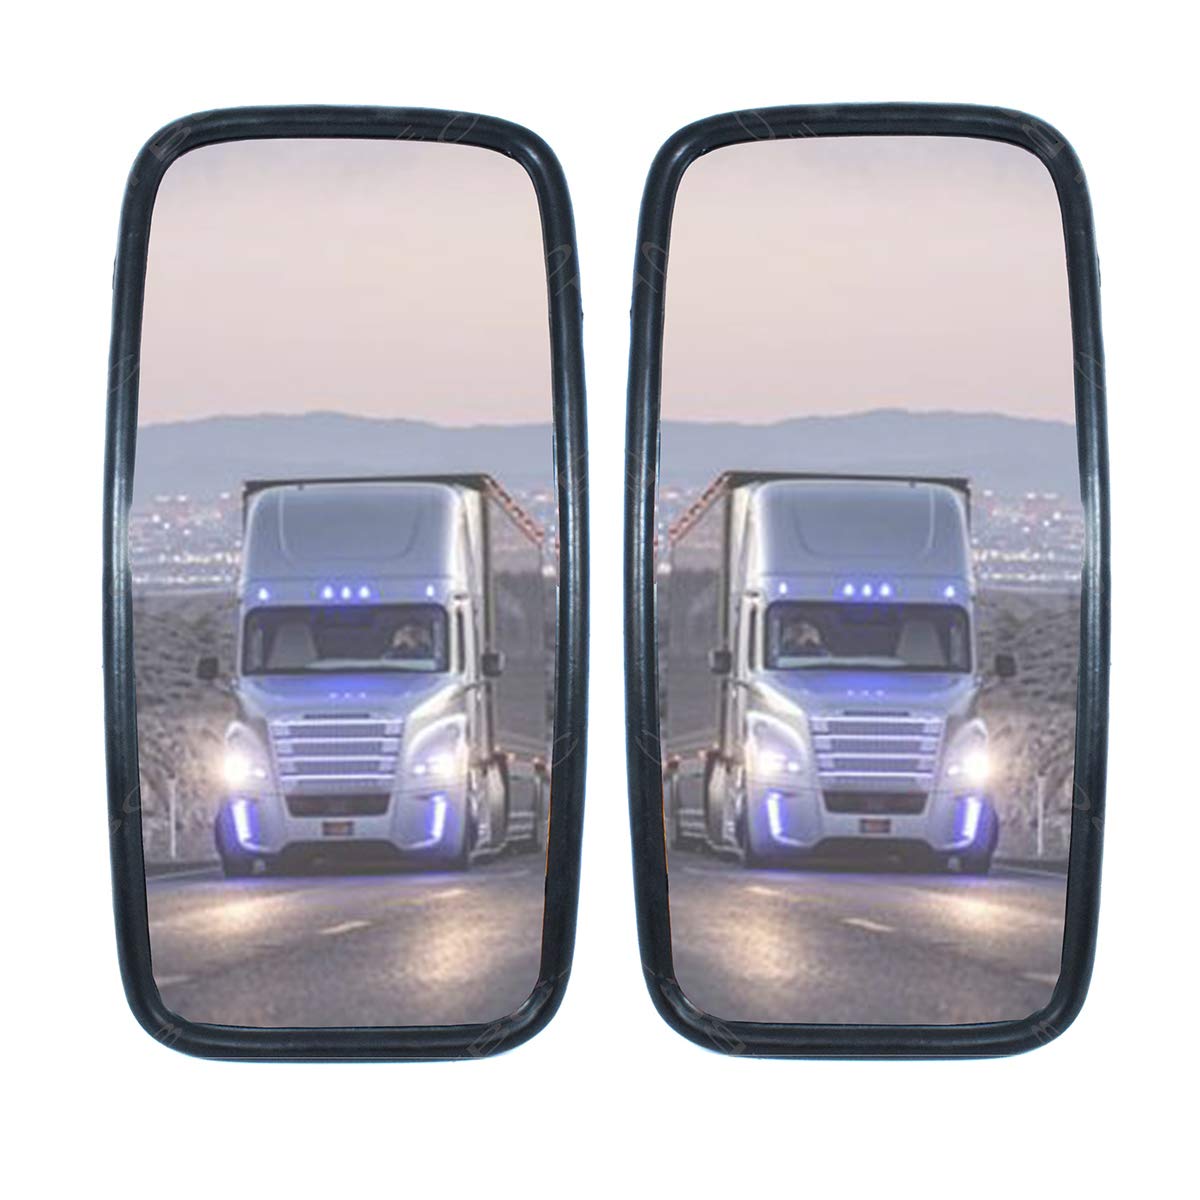 2x LKW, Transporter oder Bus Spiegel universal 36 x 18 cm Größe von Promo Link